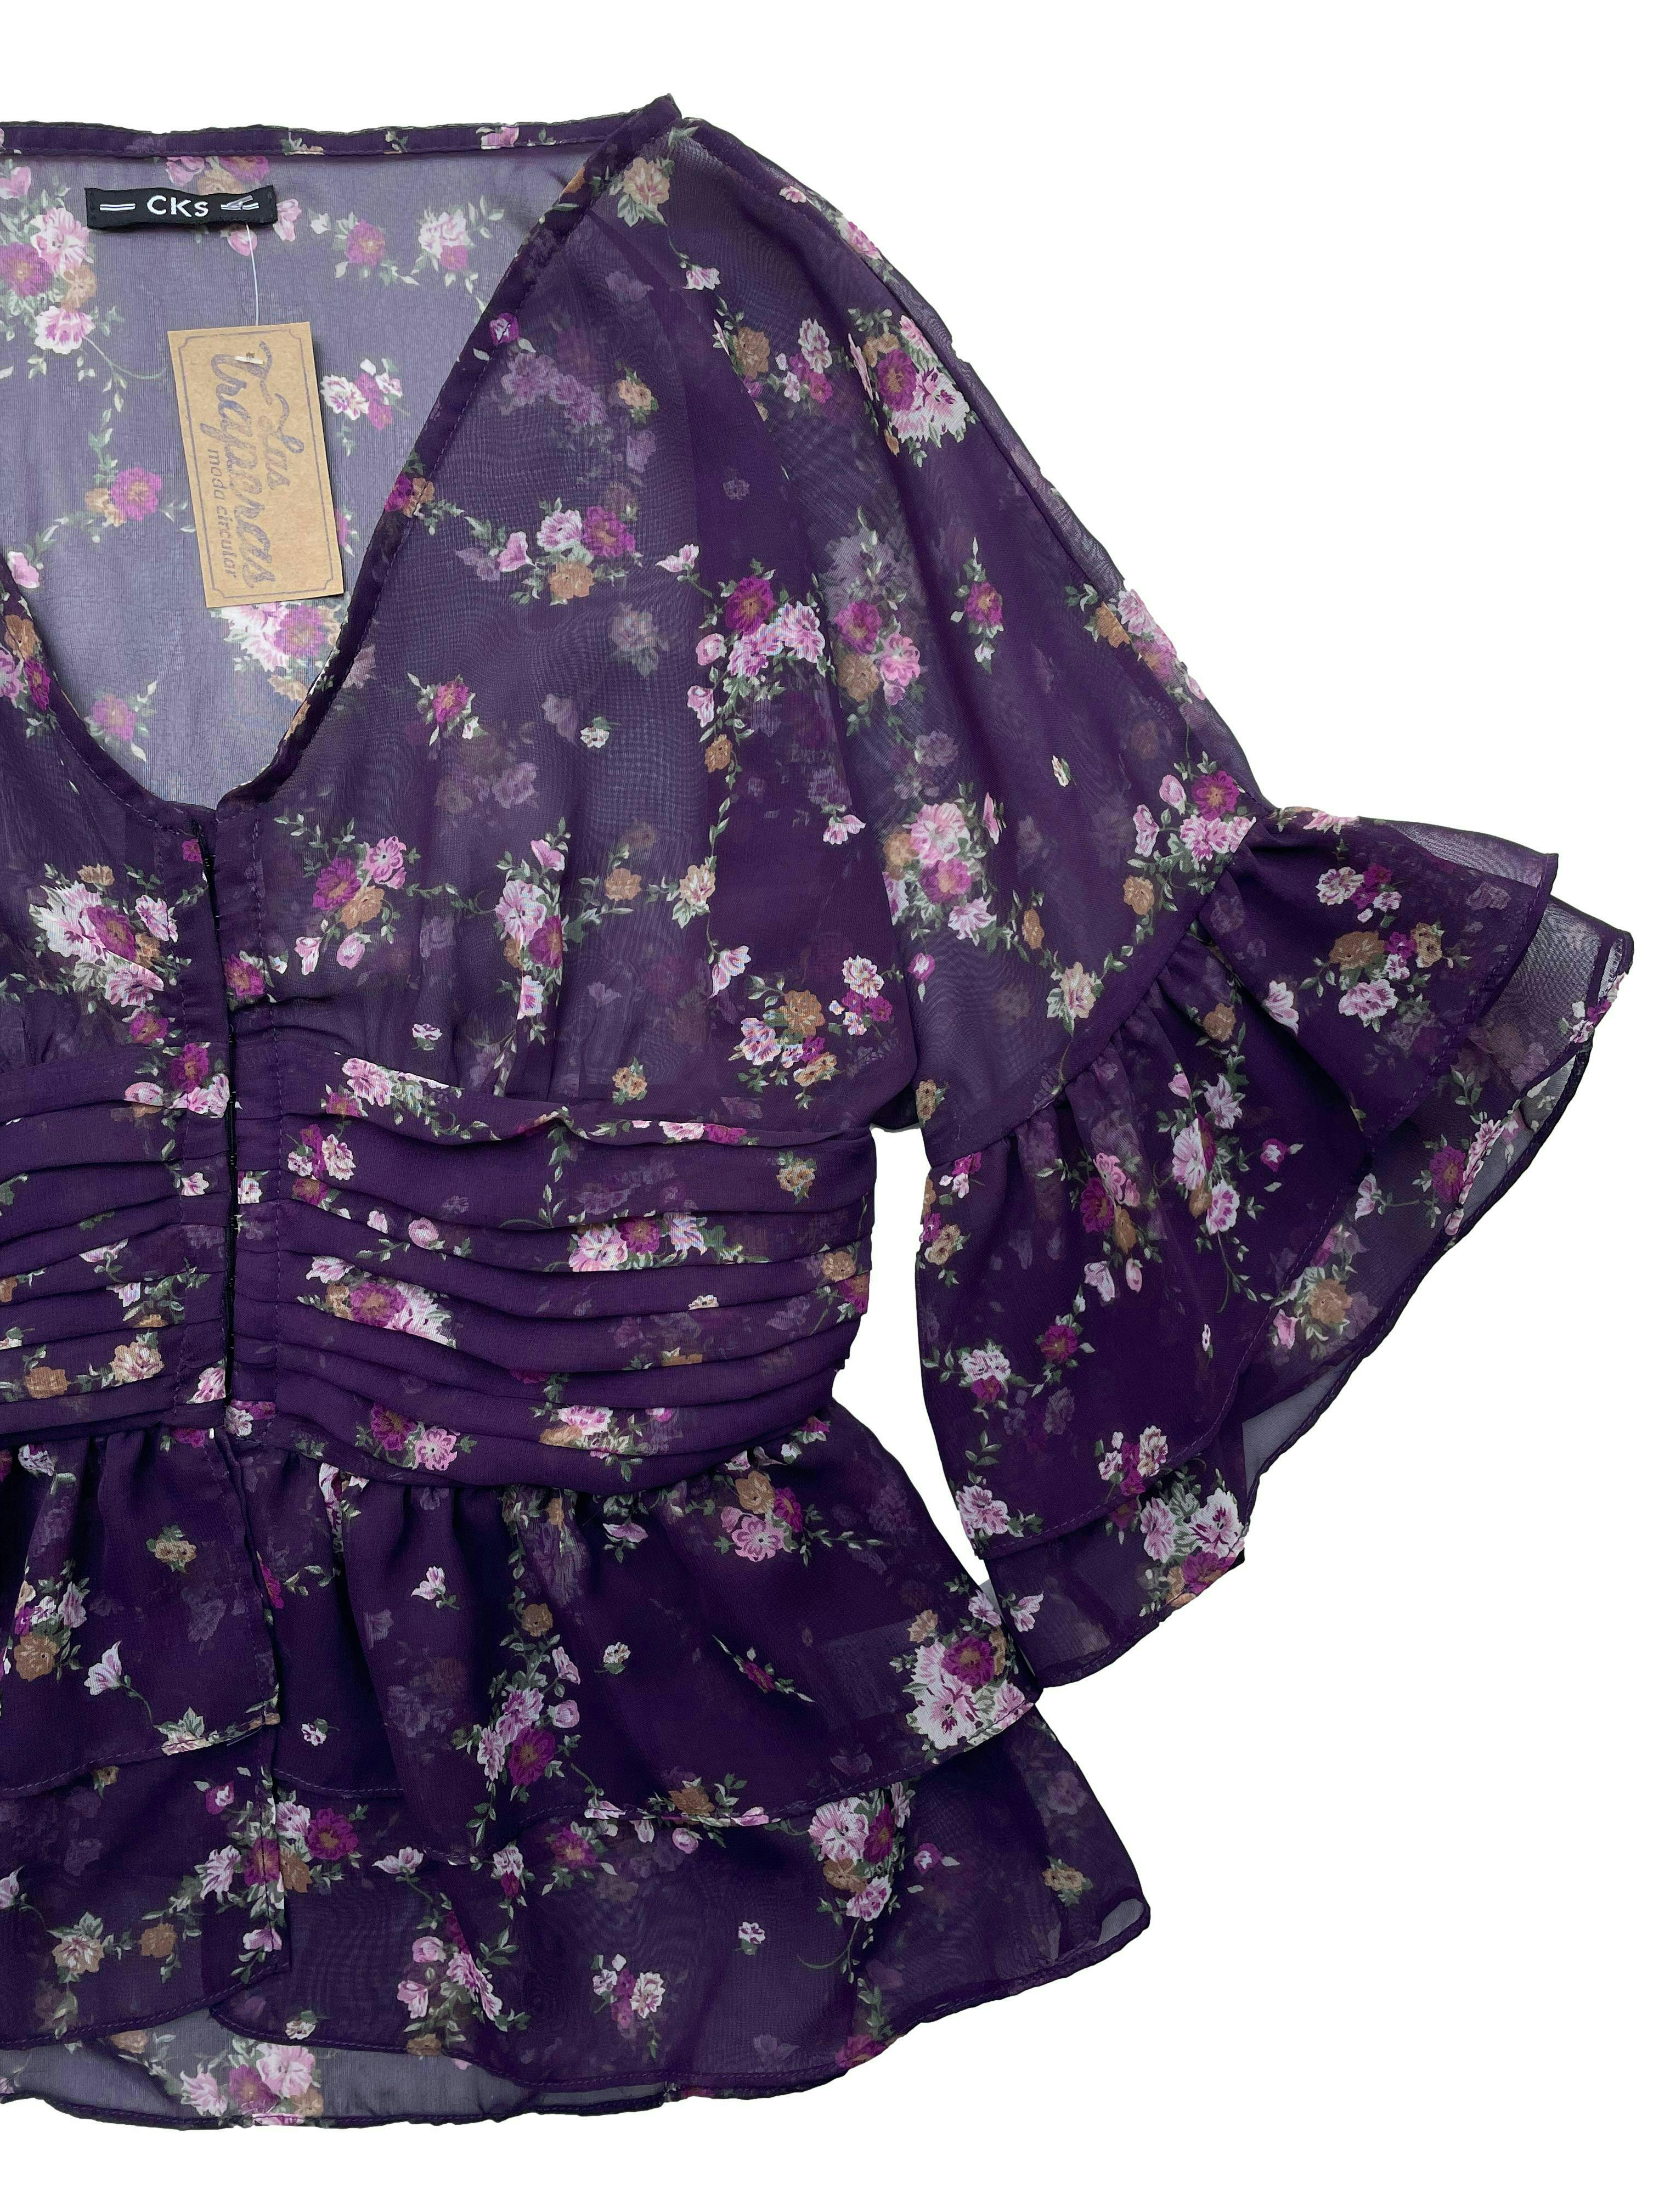 Blusa morada de gasa con estampado floral, escote en V, abertura mediante corchetes, volantes y drapeados. Busto 90cm, Largo 57cm.